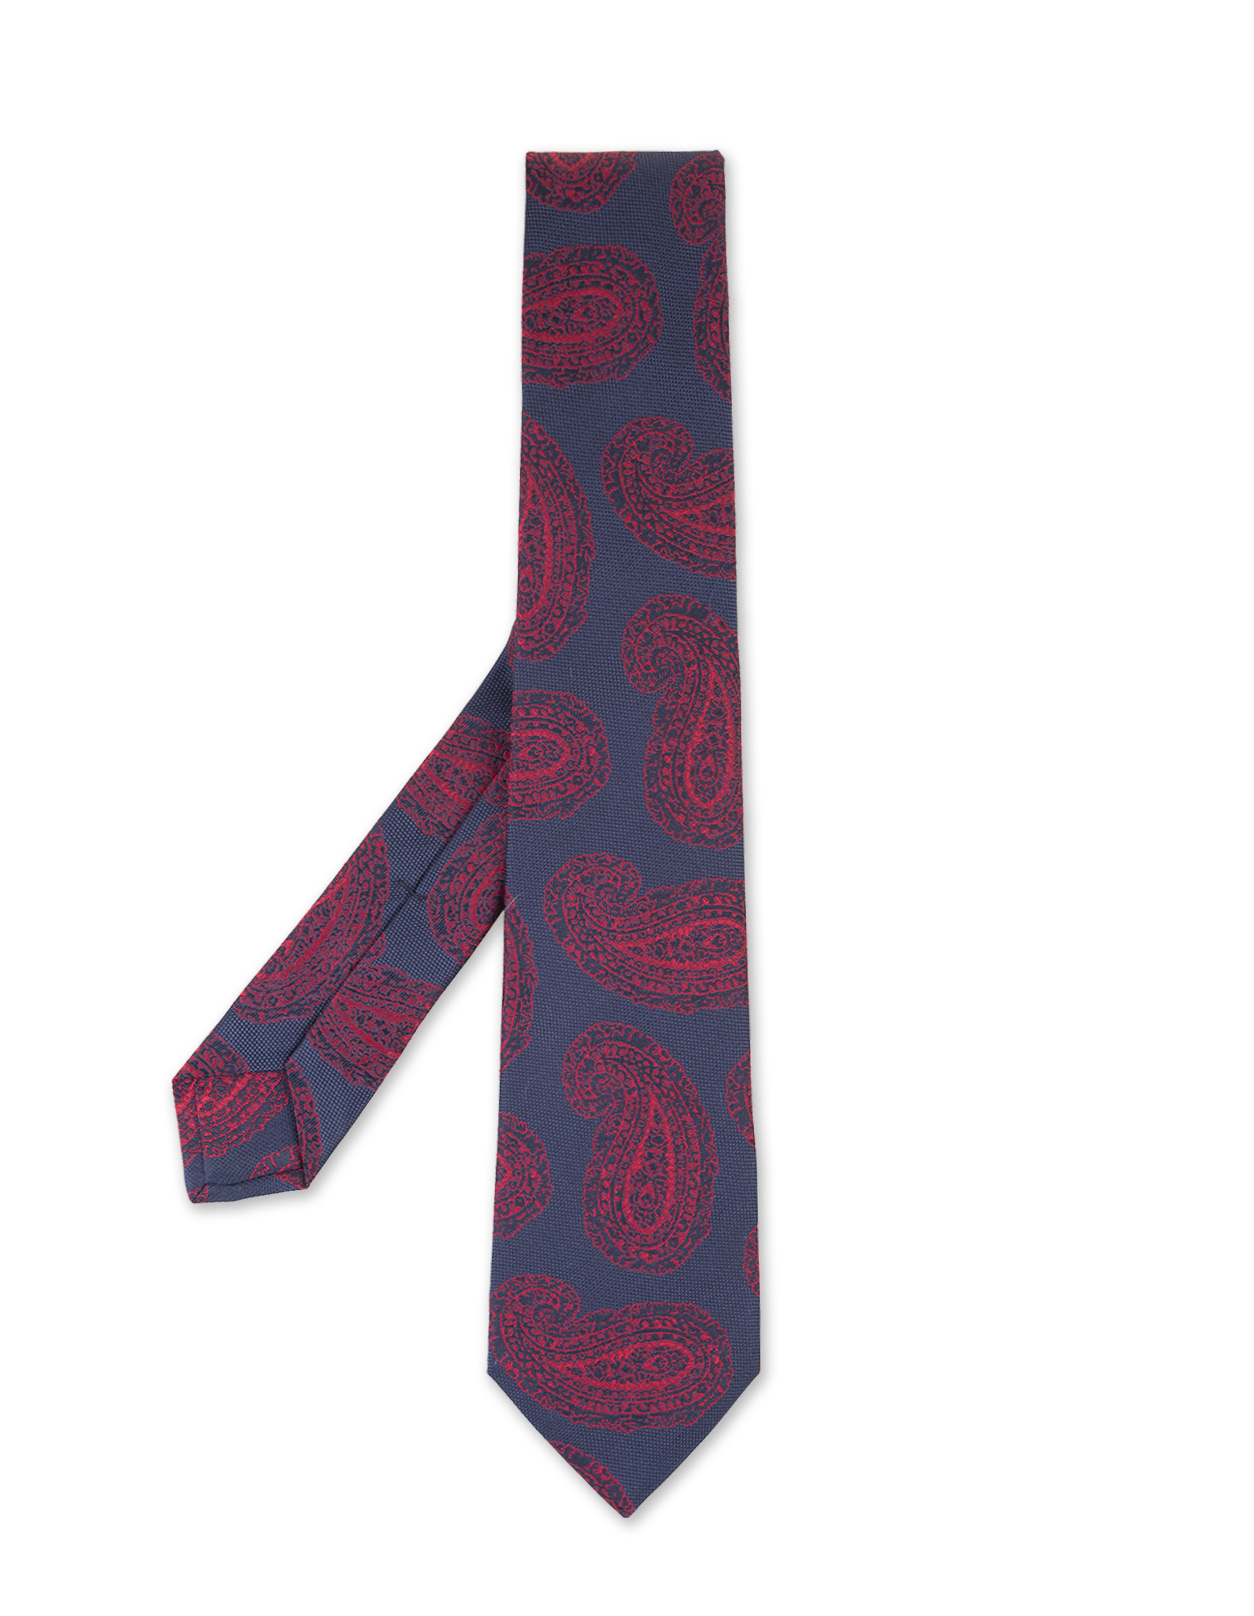 Cravatta Blu Scuro Con Disegno Cashmere Rosso KITON | UCRVKRC02I2803